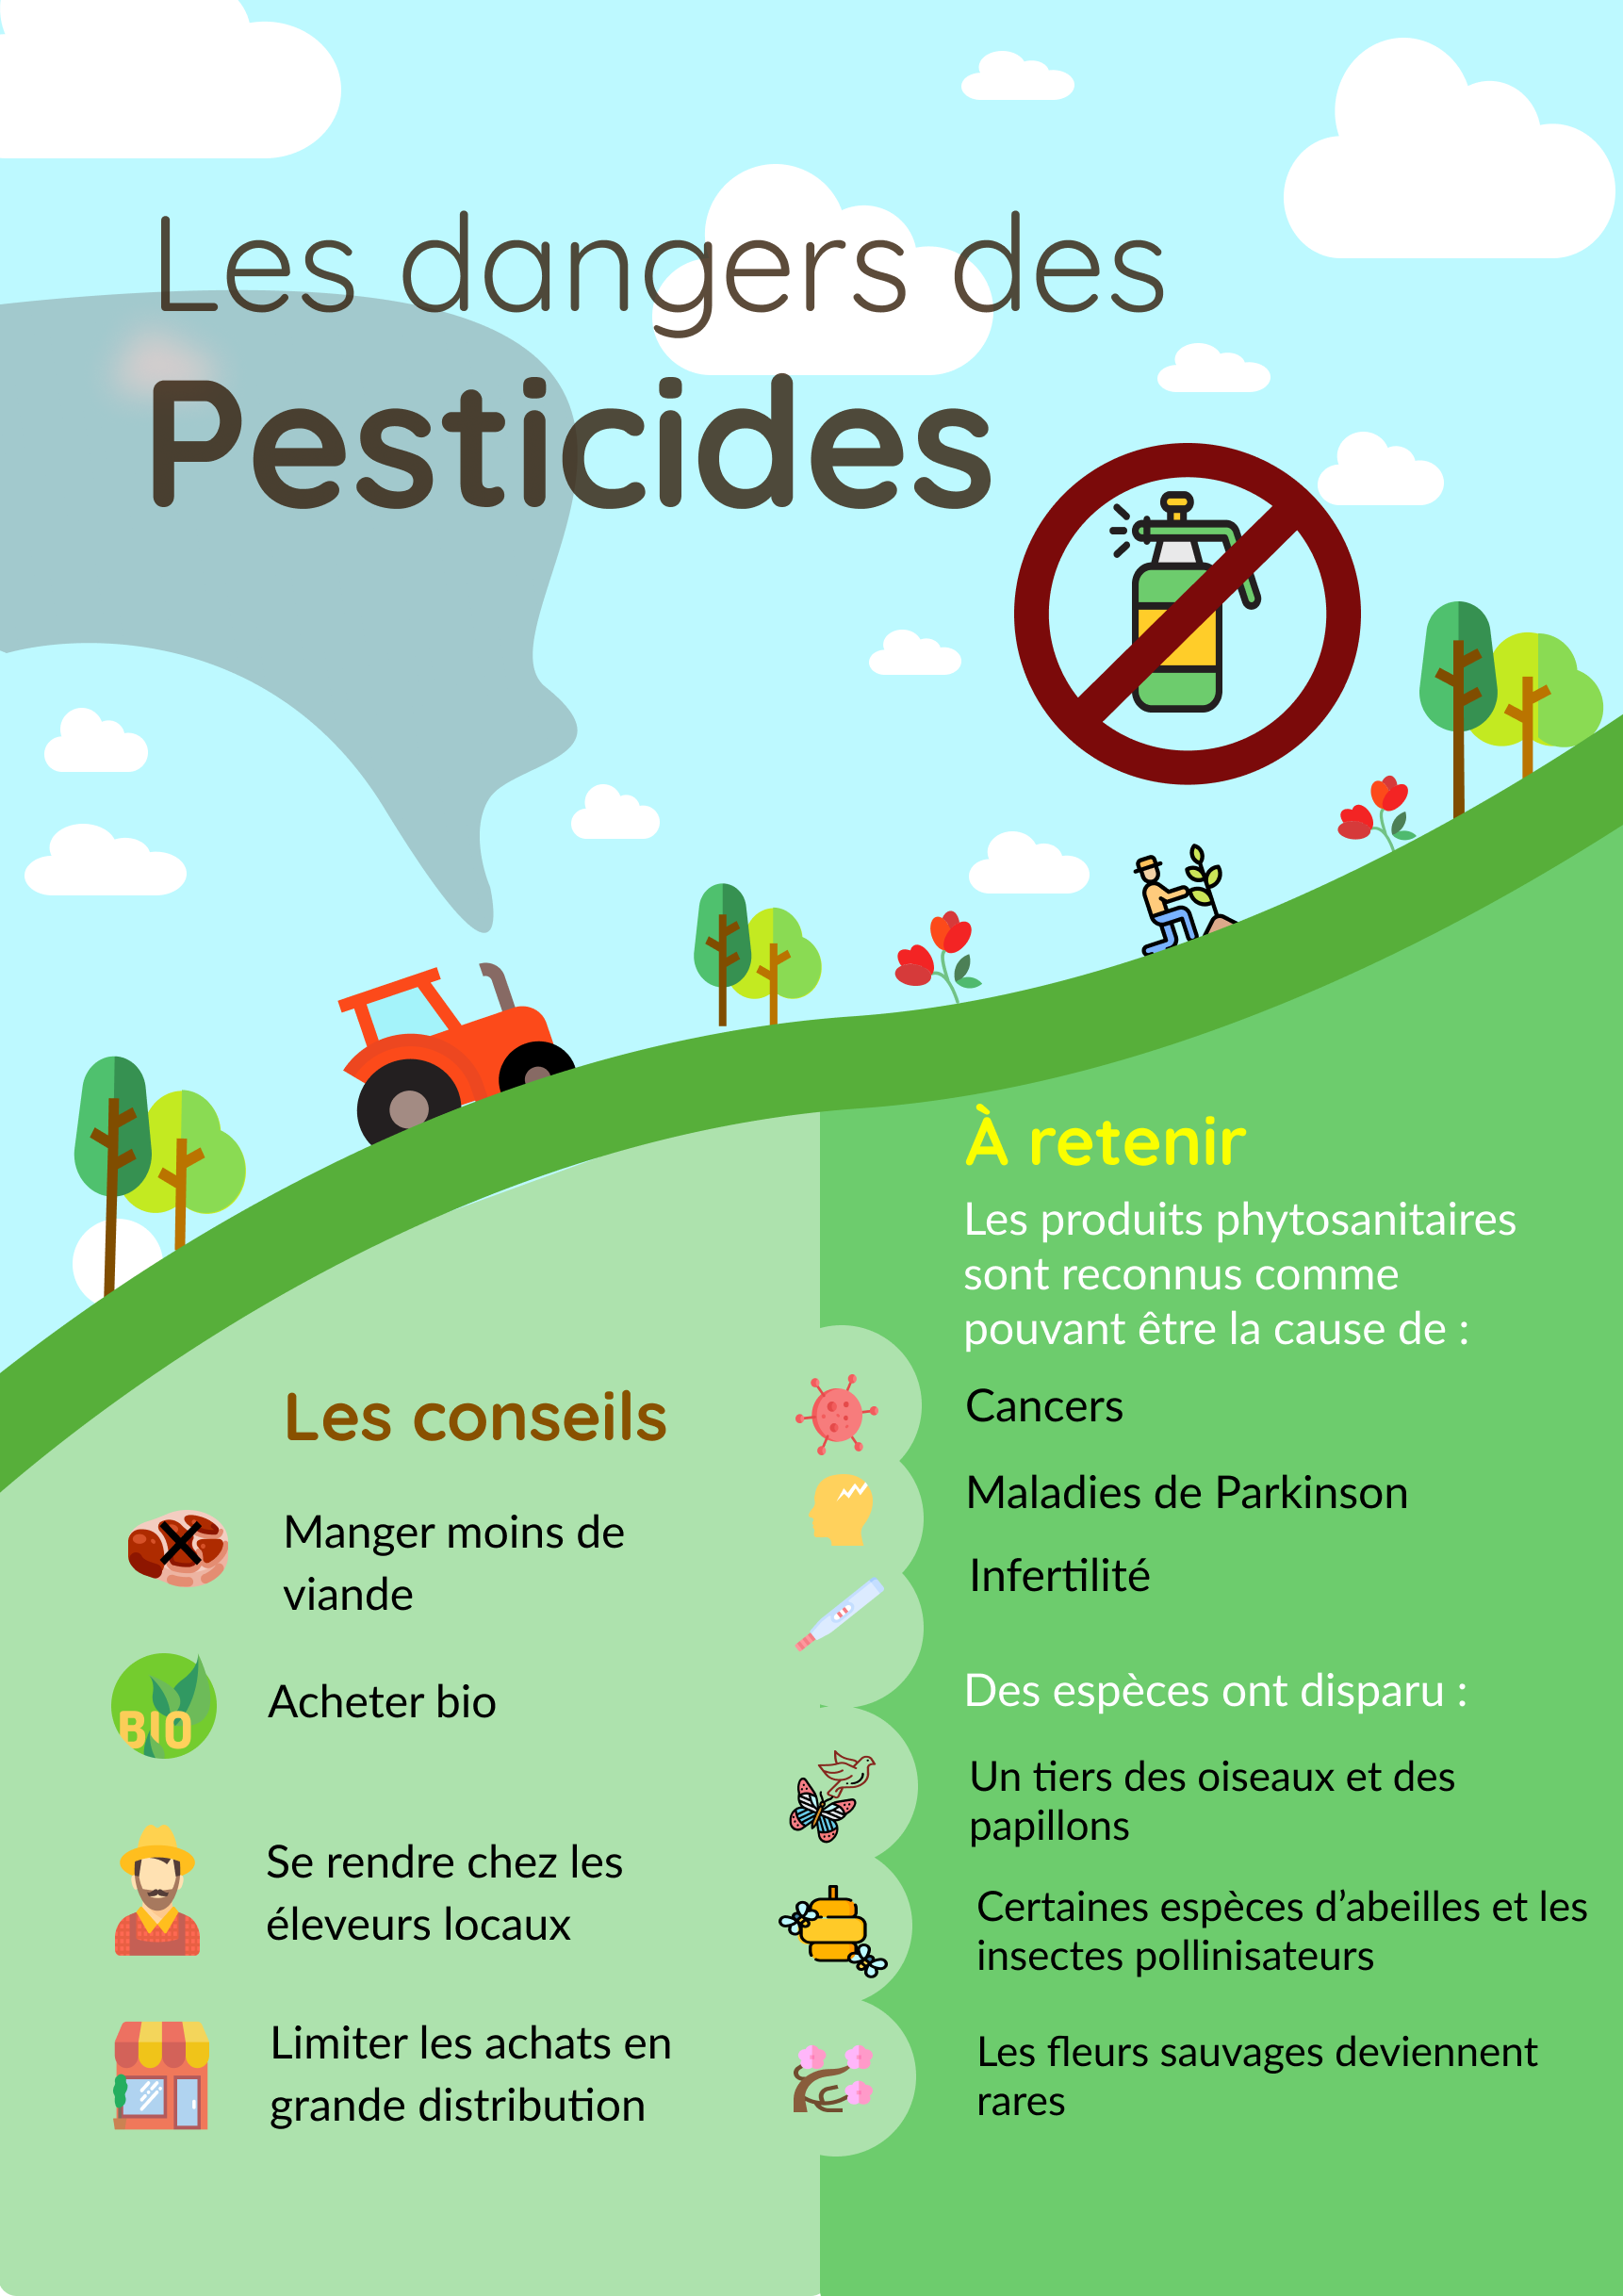 Les dangers des pesticides 